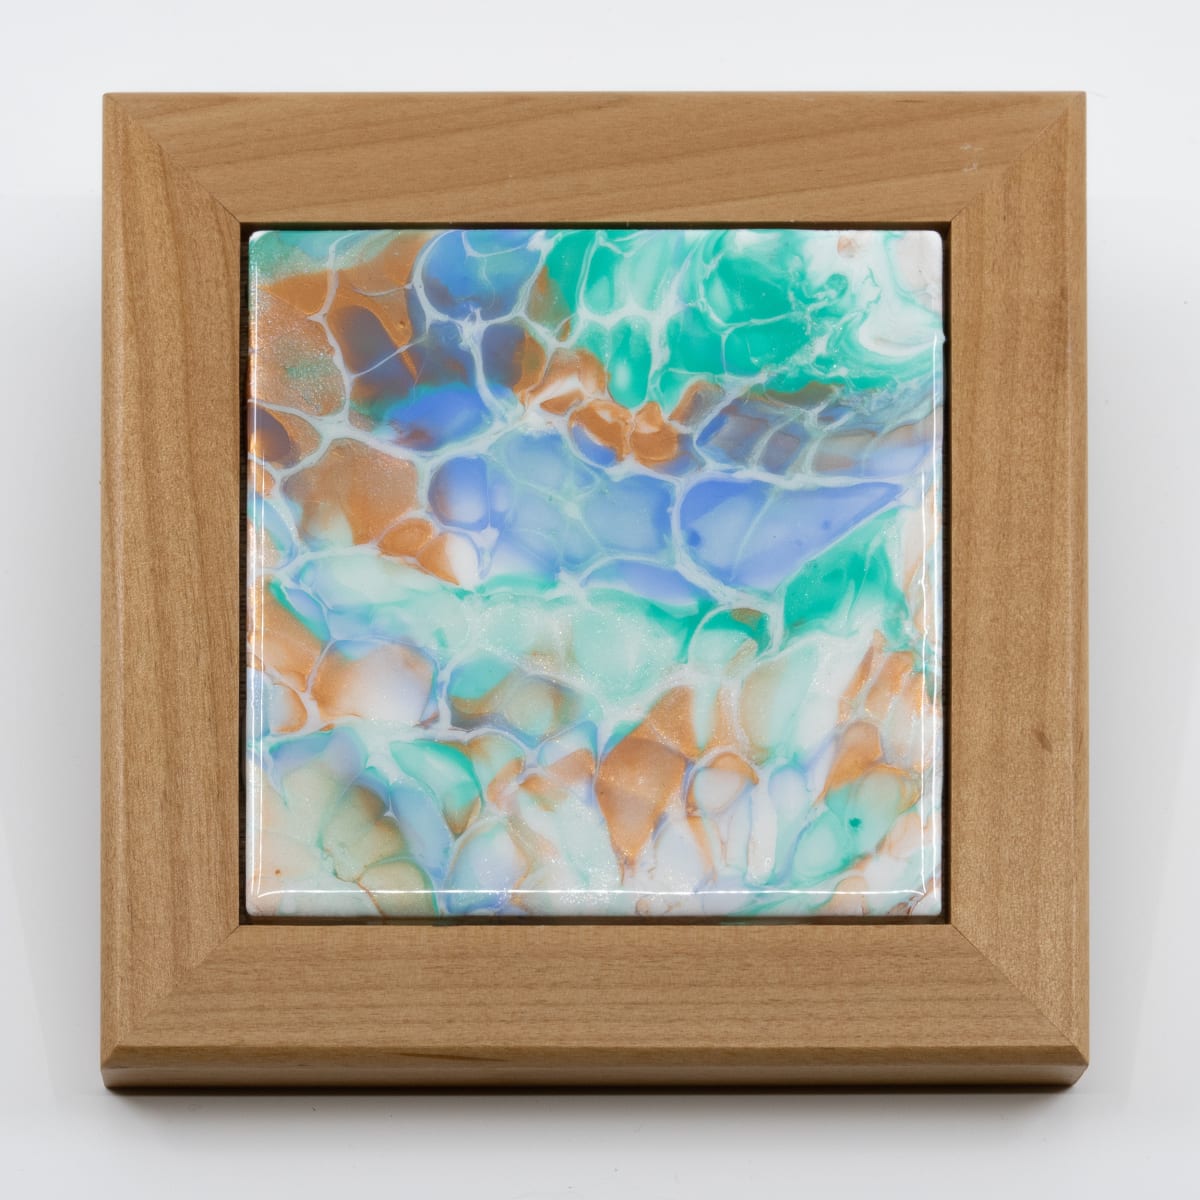 Fluid Art 6" Blonde Wood Framed Tile by Sandy Miller 